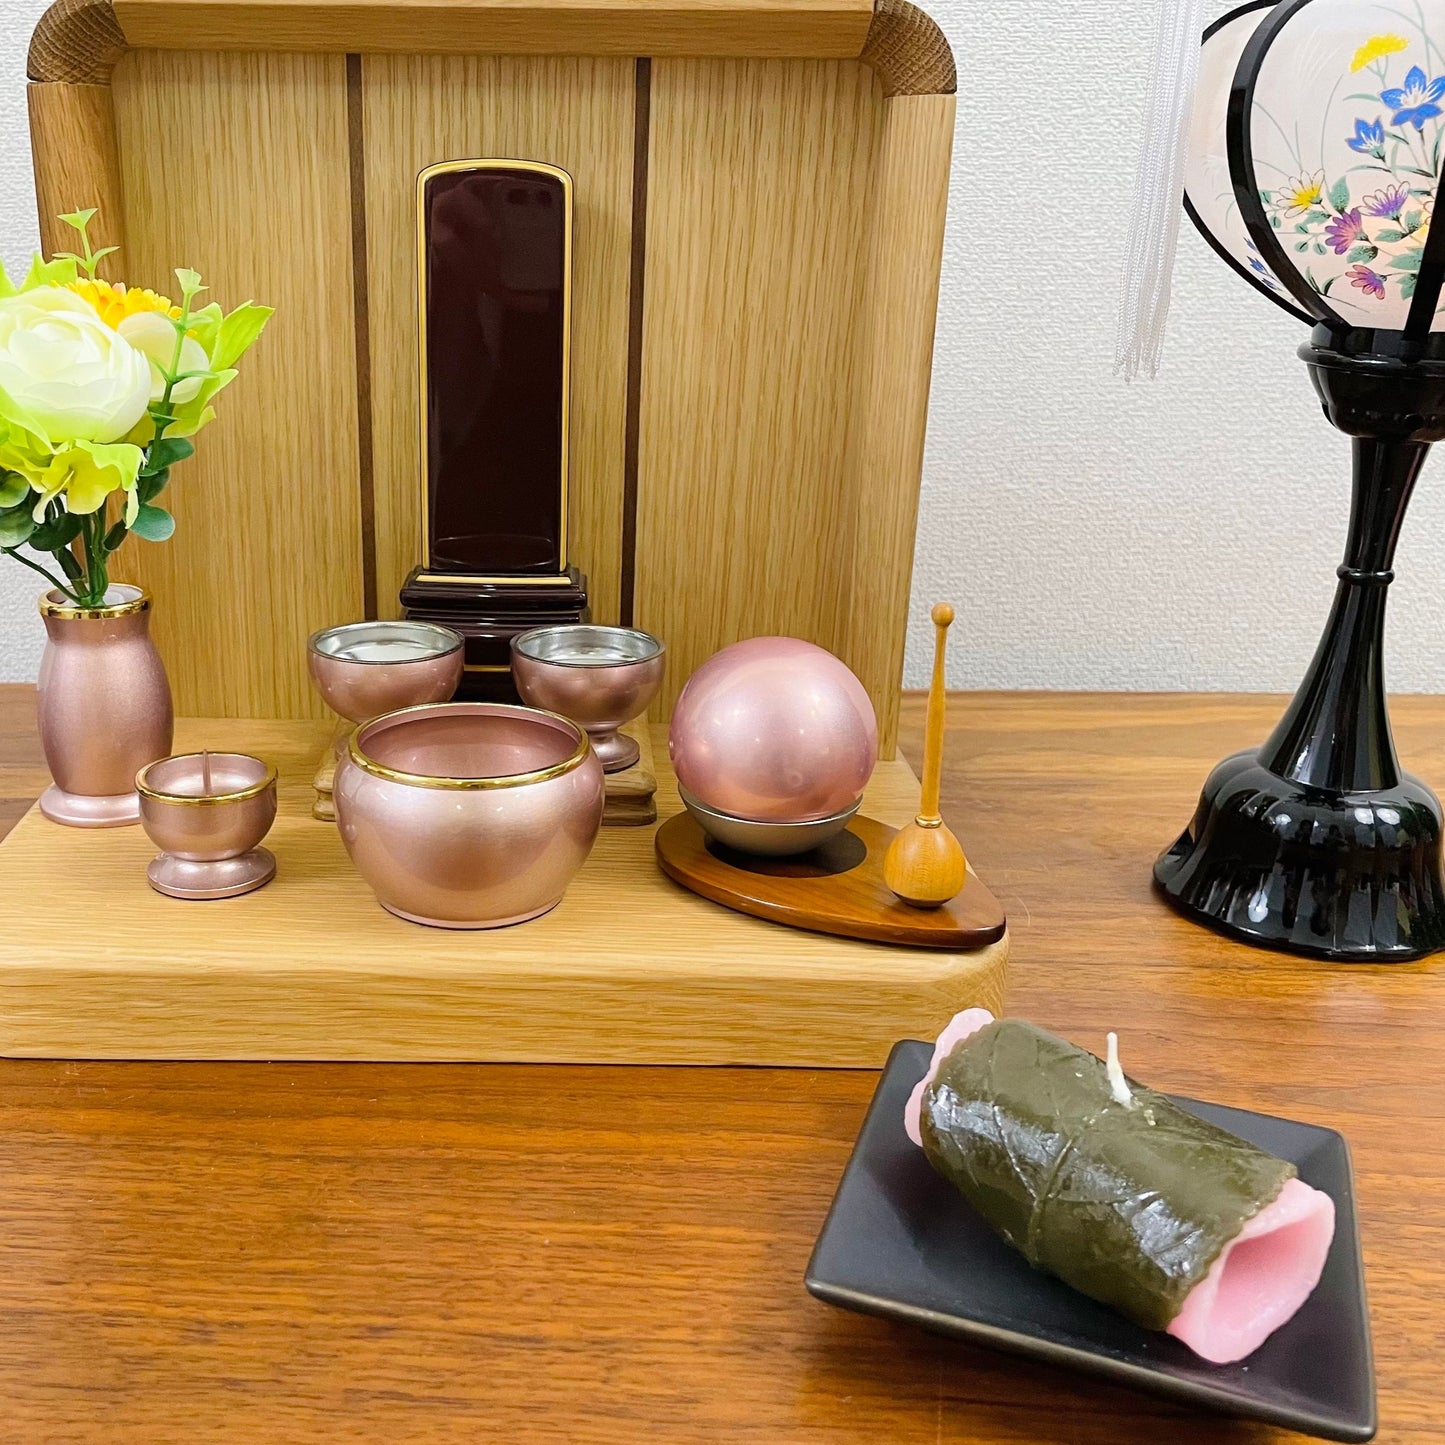 さくら餅 キャンドル - sakura mochi candle